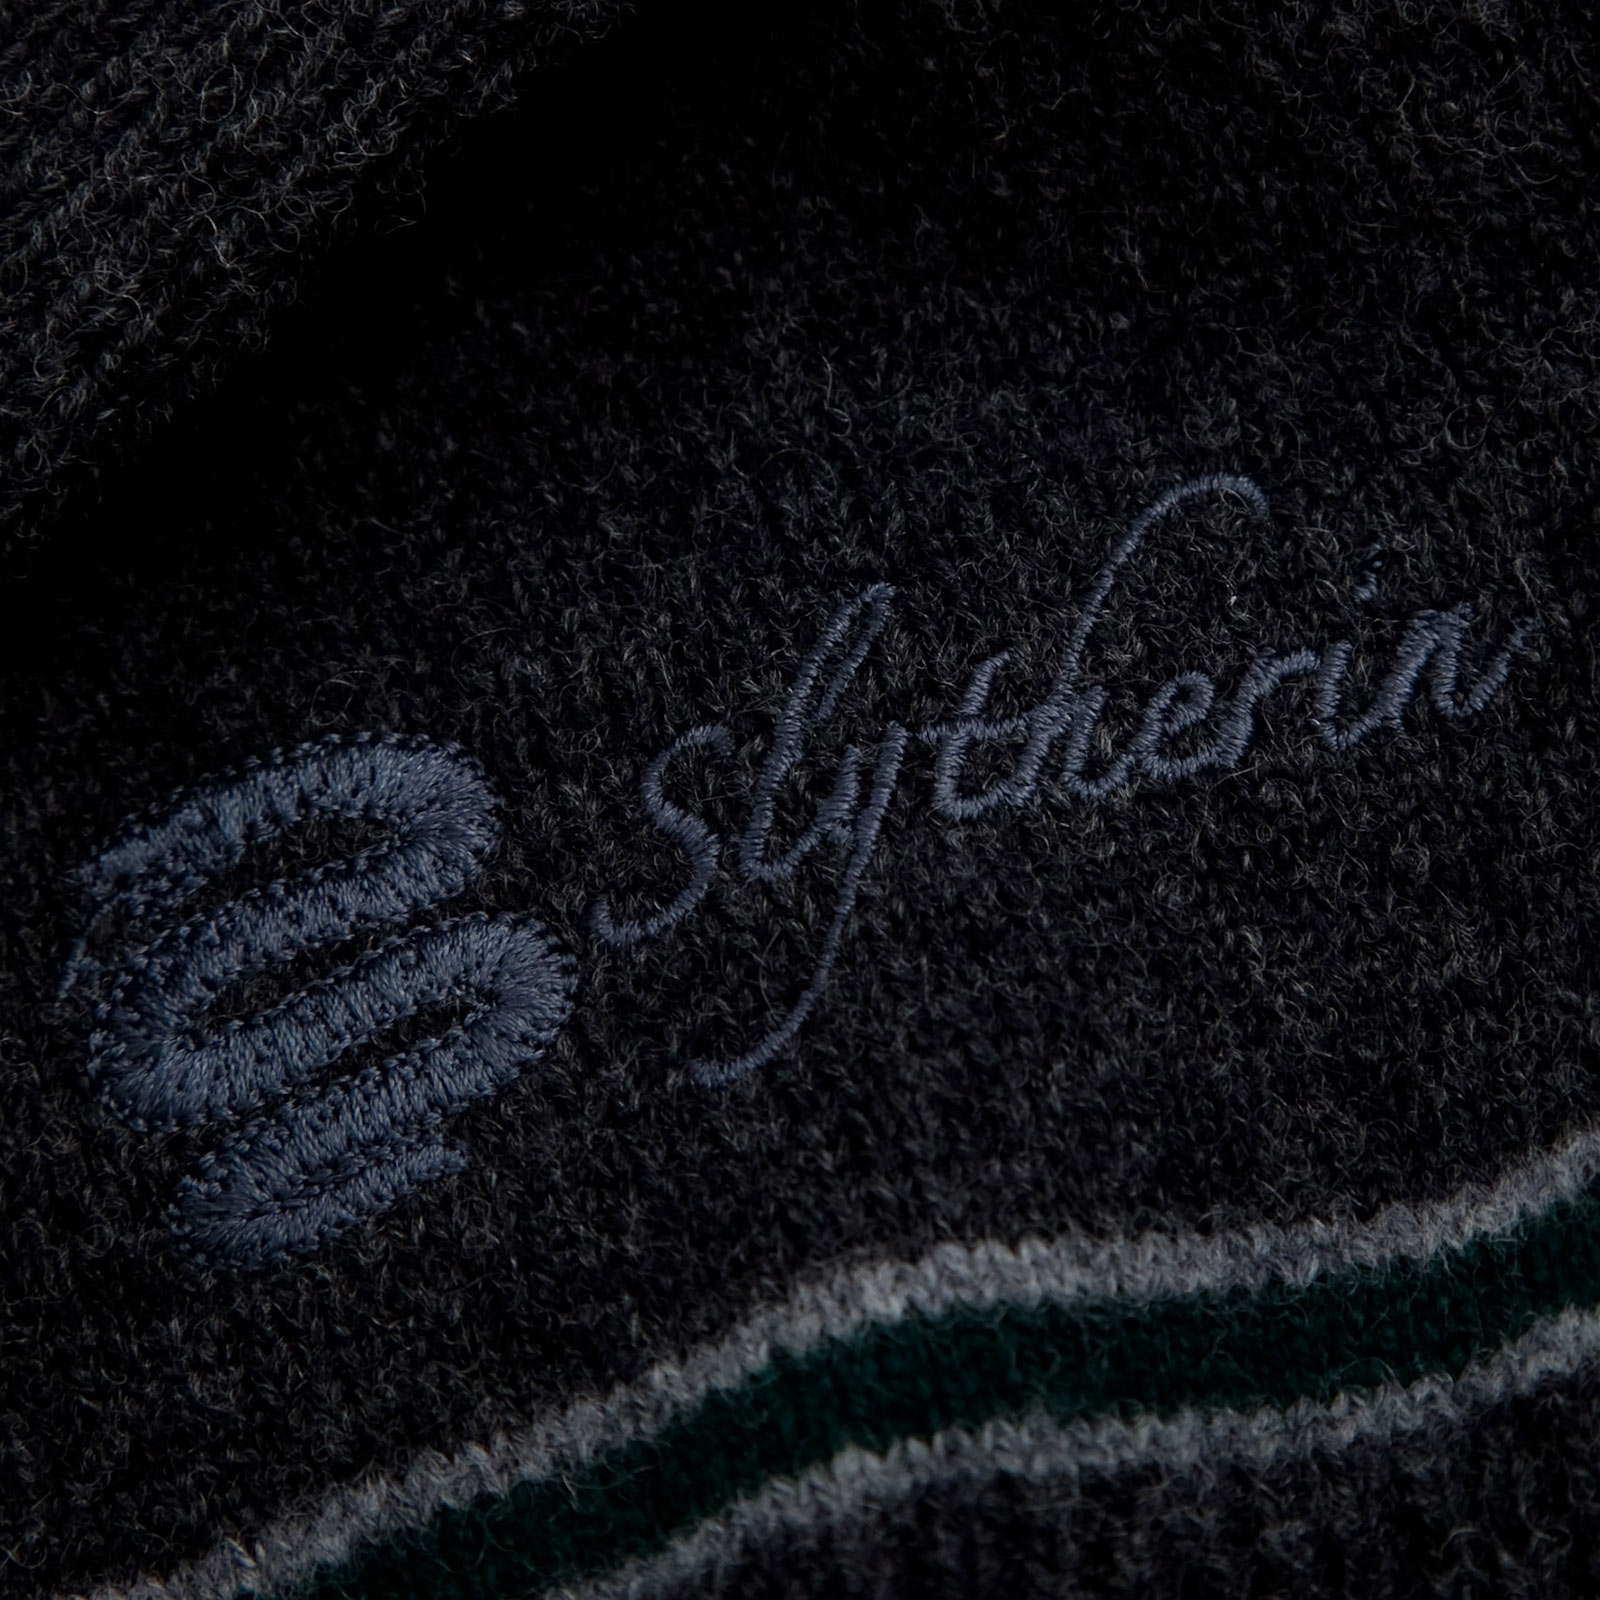 Harry Potter - Slytherin Sweater